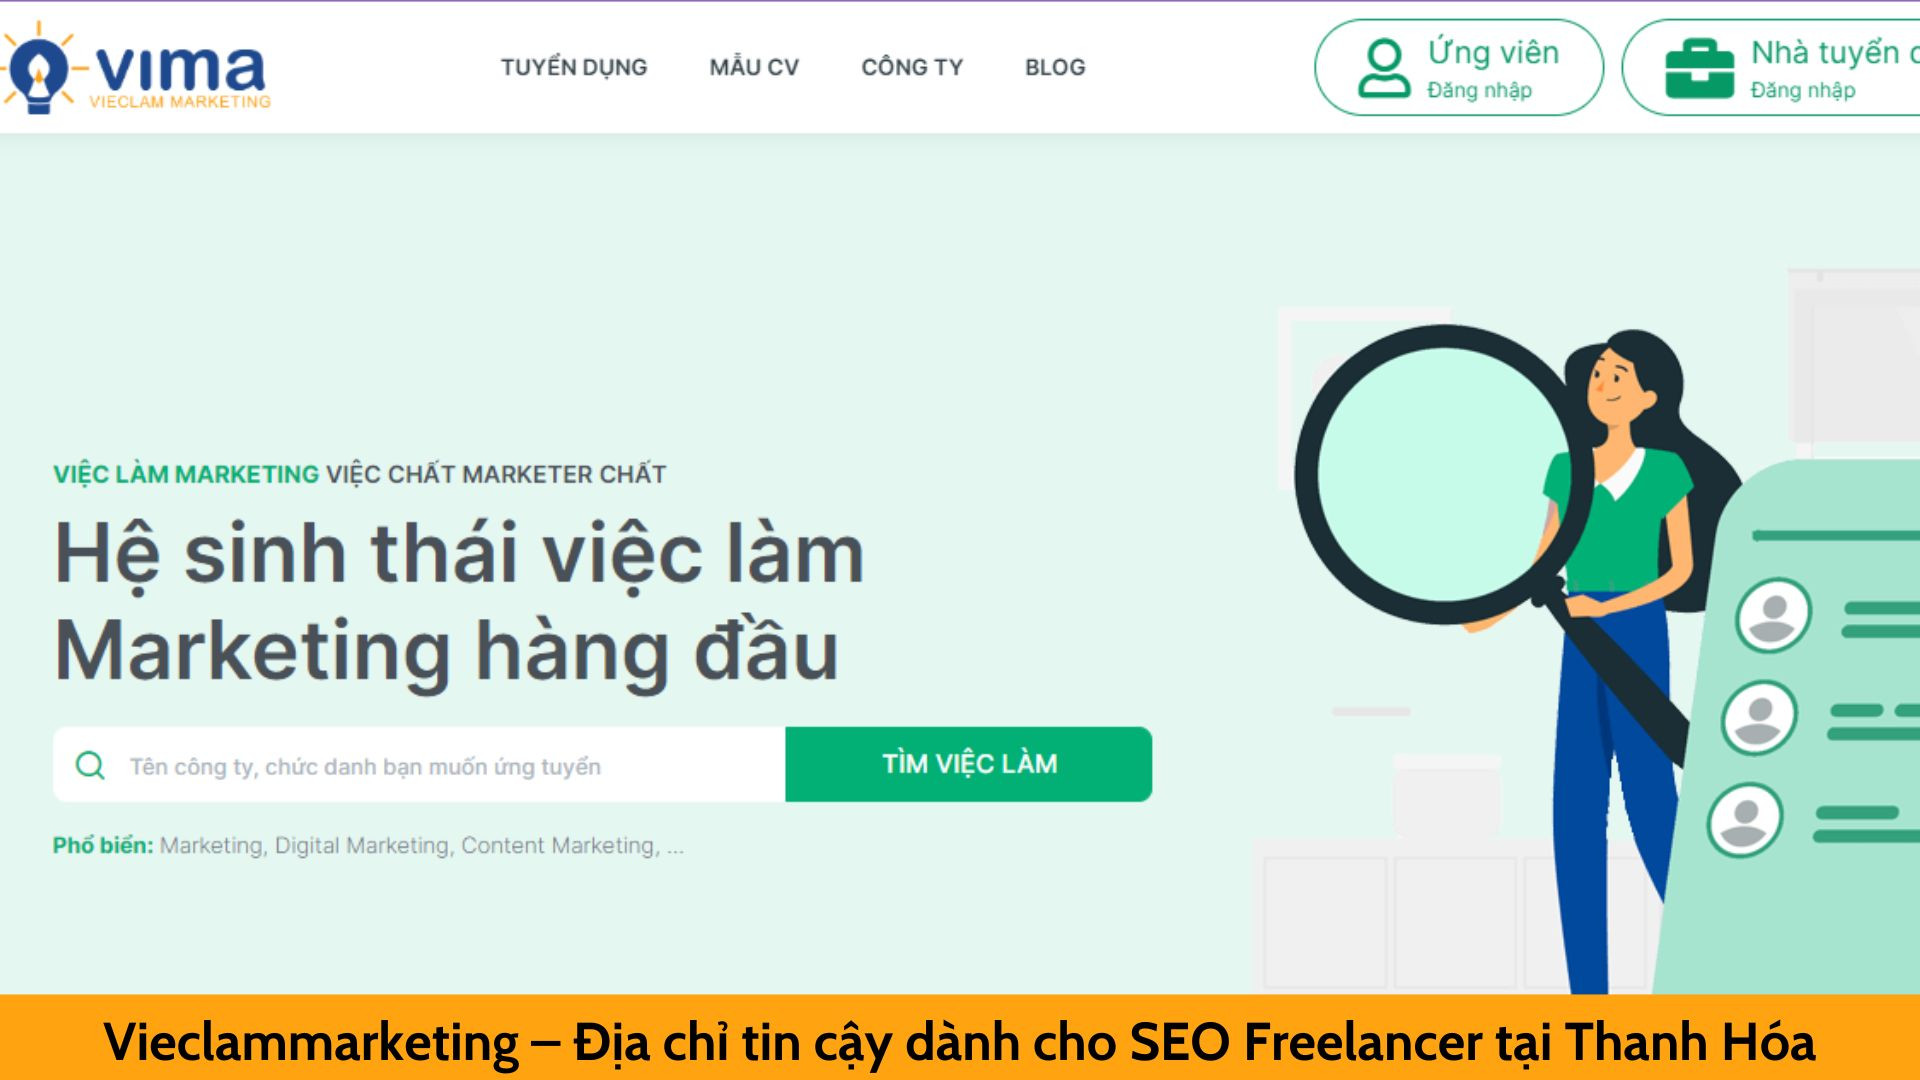 Vieclammarketing – Địa chỉ tin cậy dành cho SEO Freelancer tại Thanh Hóa